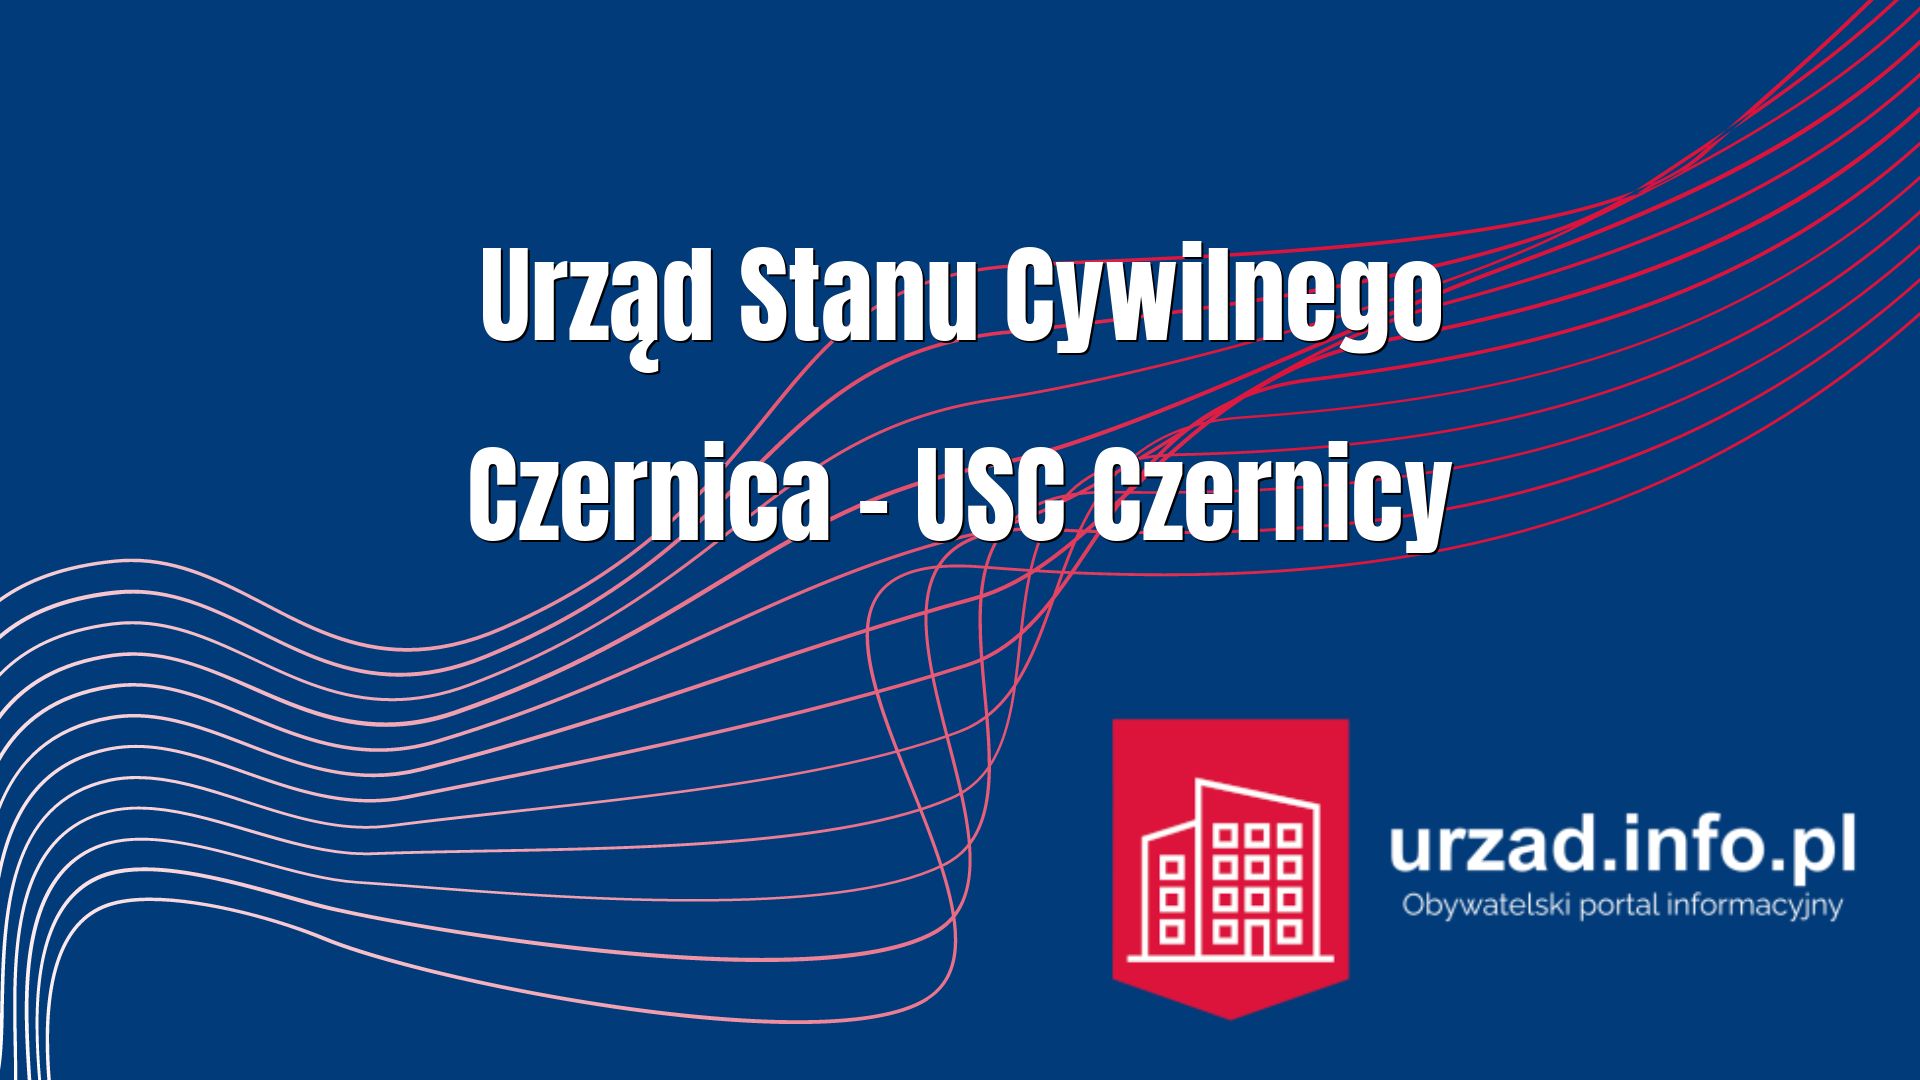 Urząd Stanu Cywilnego Czernica – USC Czernicy